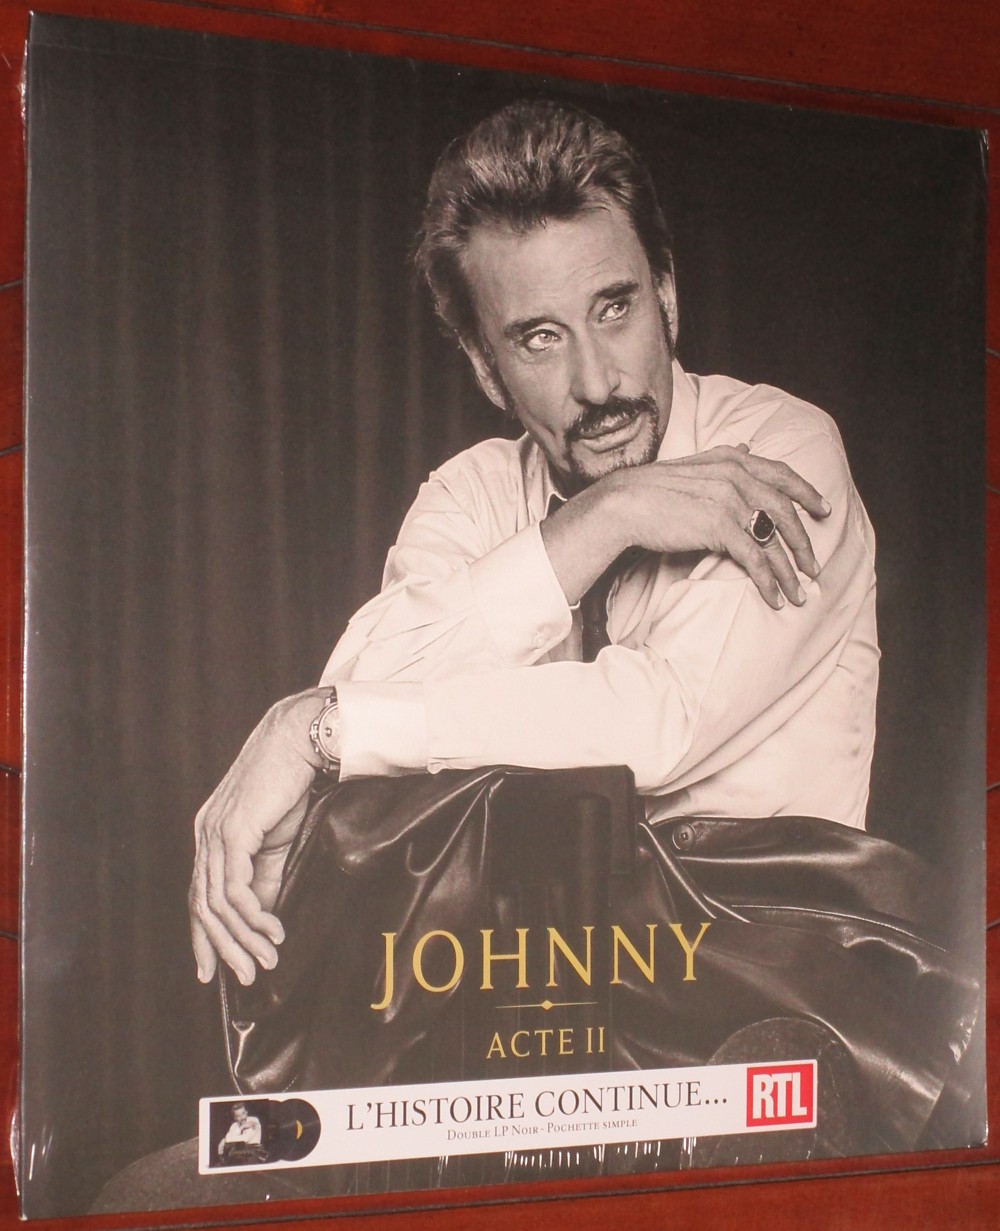 JOHNNY ACTE II 001-jo18